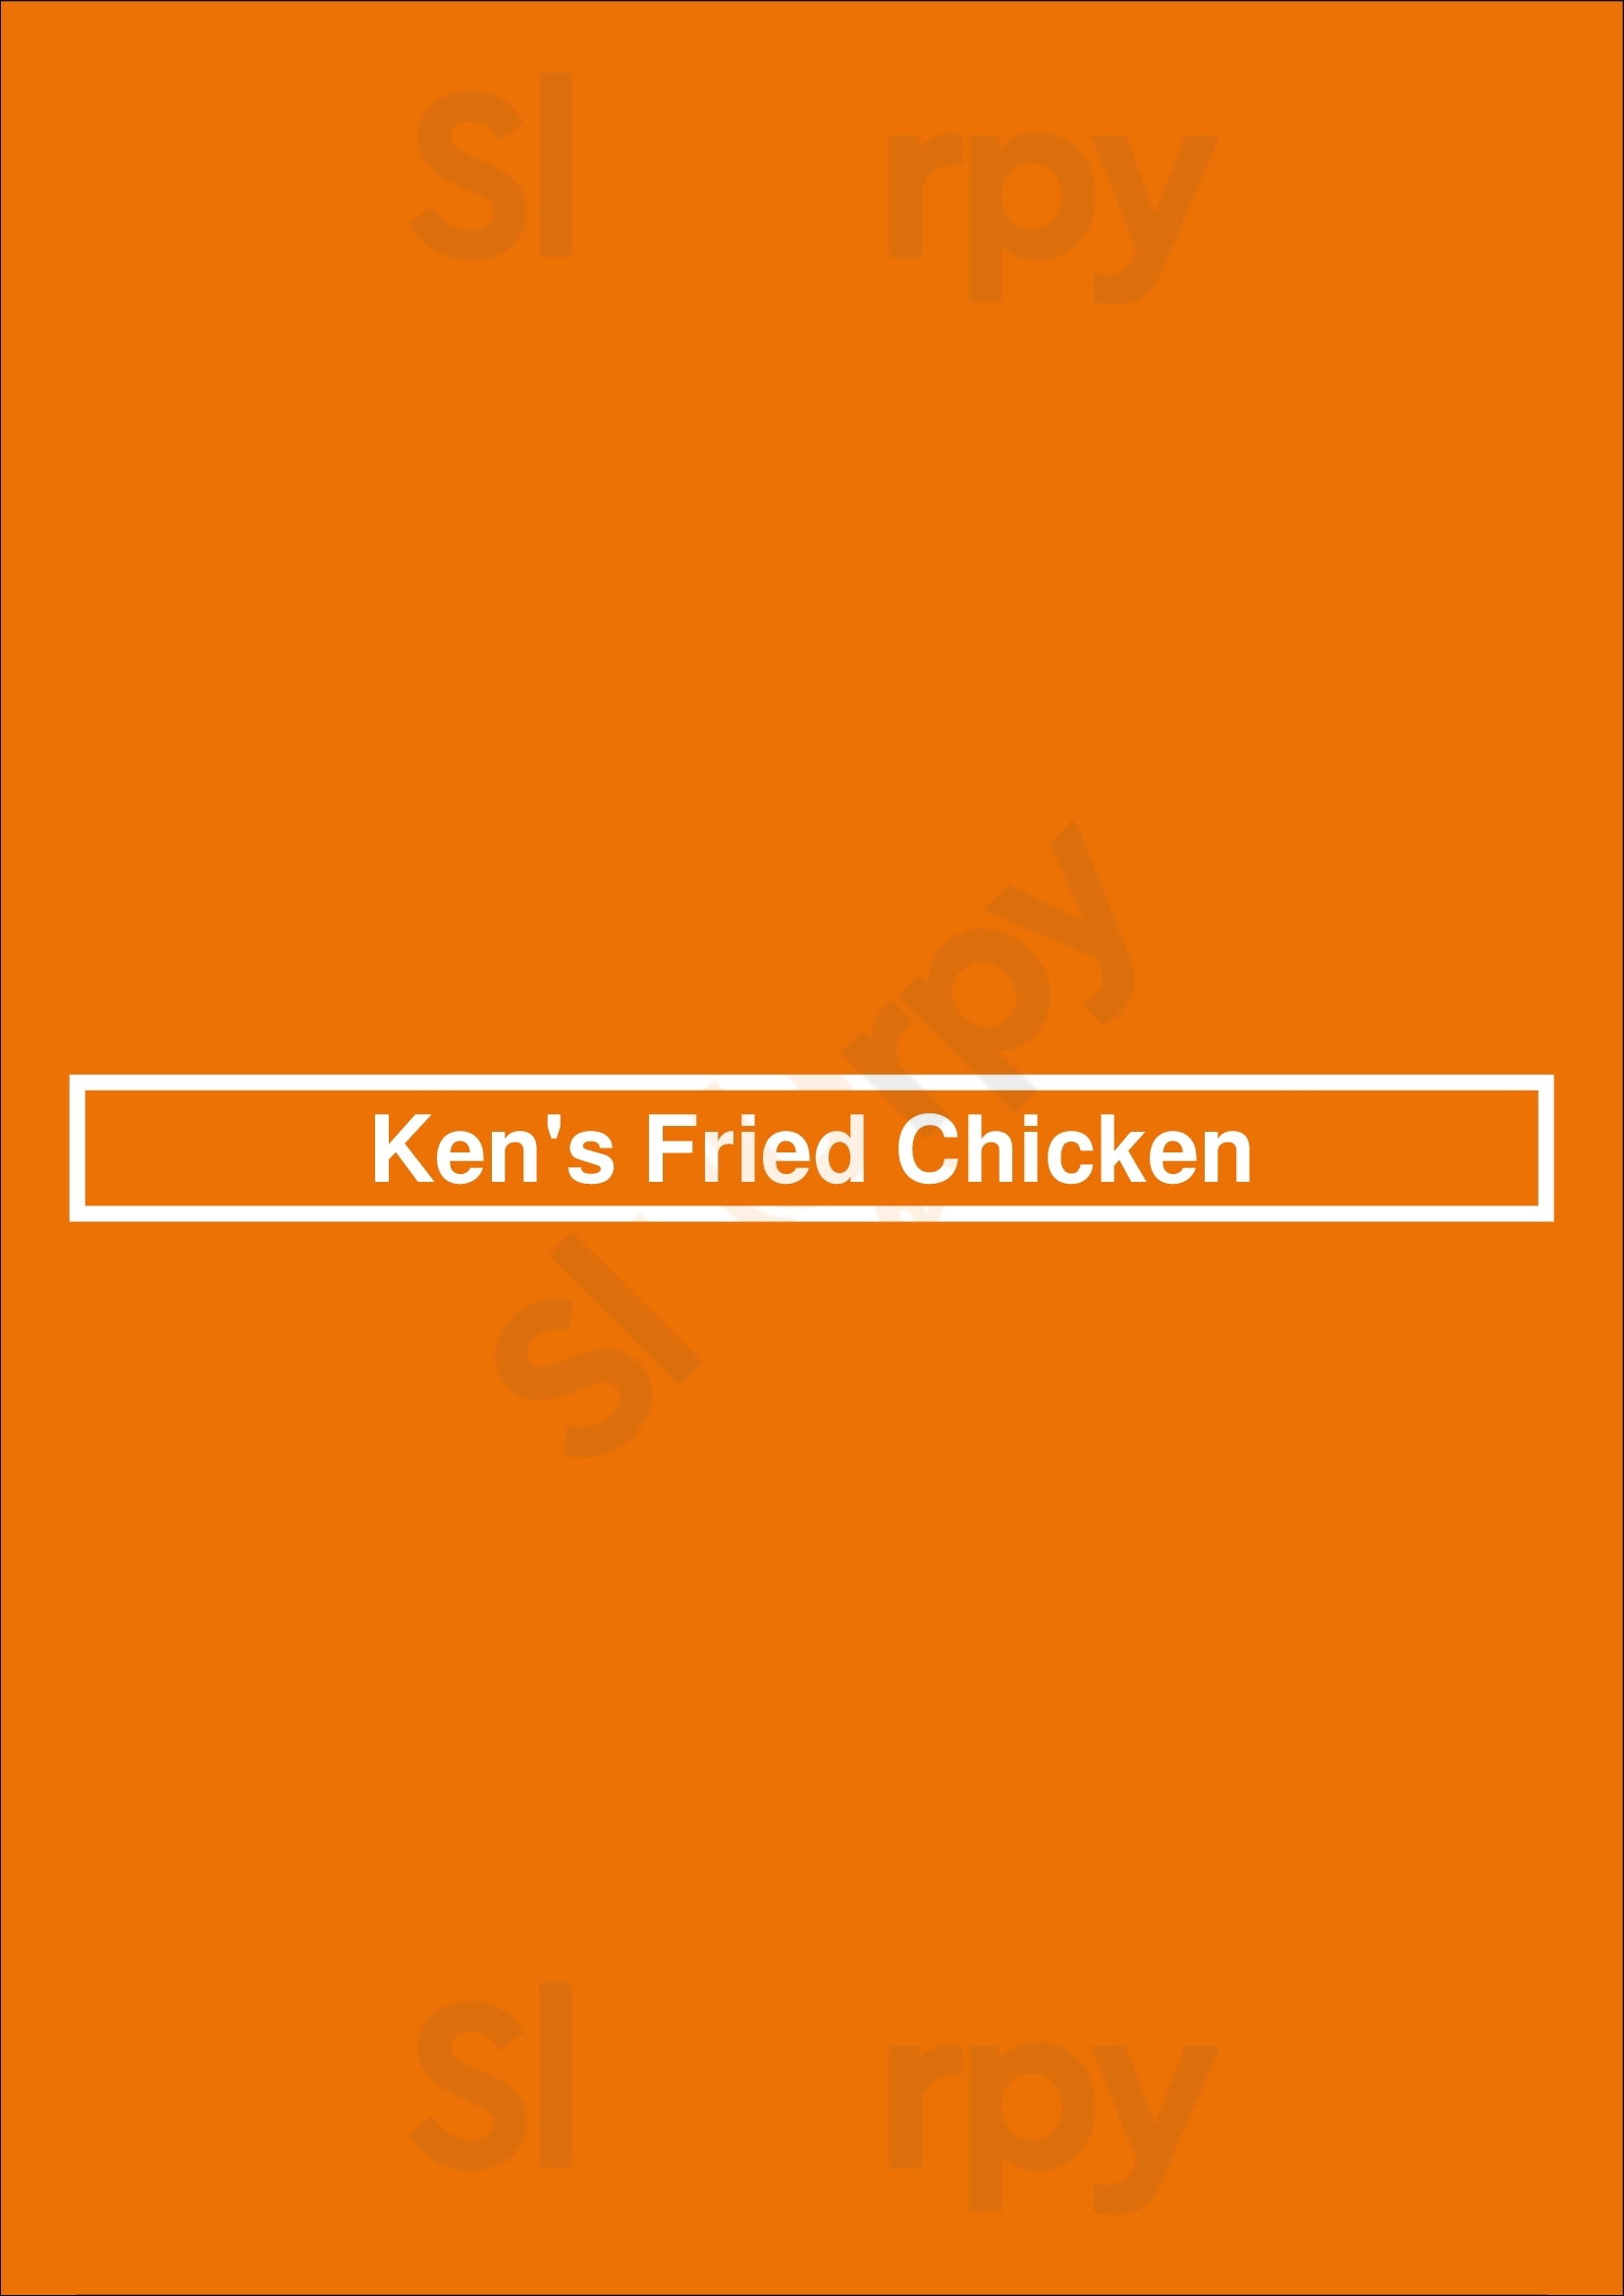 Ken's Fried Chicken Portsmouth Menu - 1